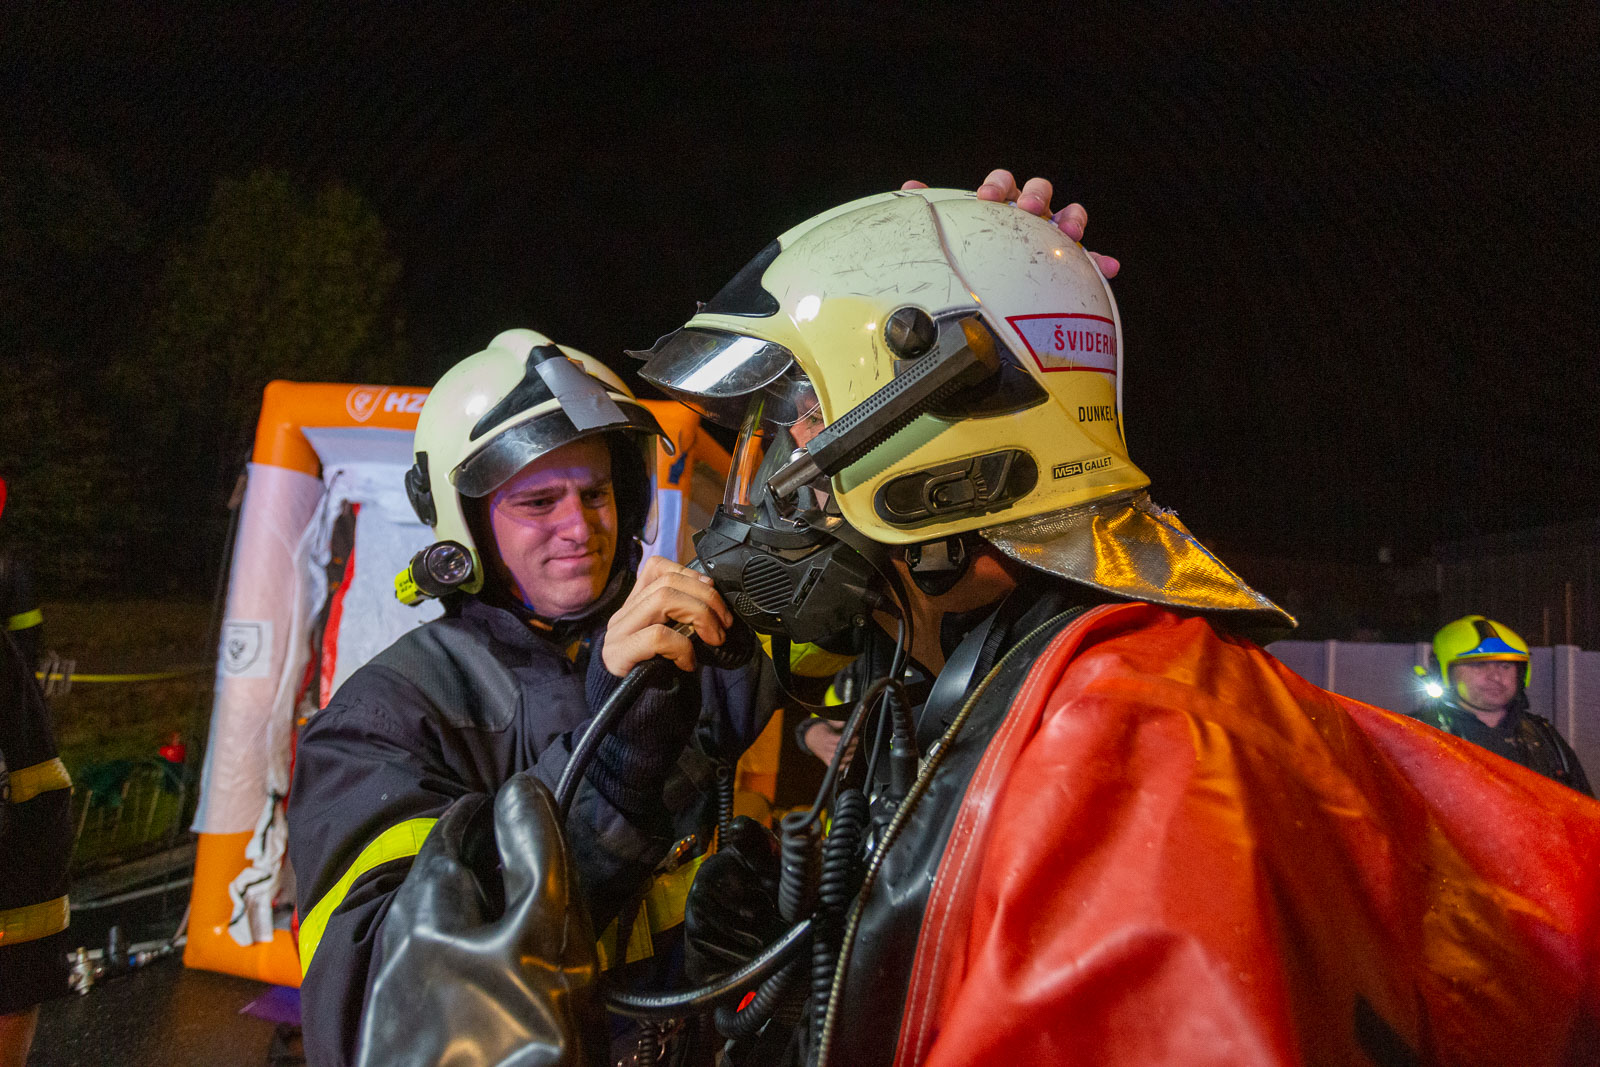 MSK_Chemická havárie, hasiči v ochranném oděvu se chystají k utěsnění trhlin v havarované cisterně s kyselinou.jpg